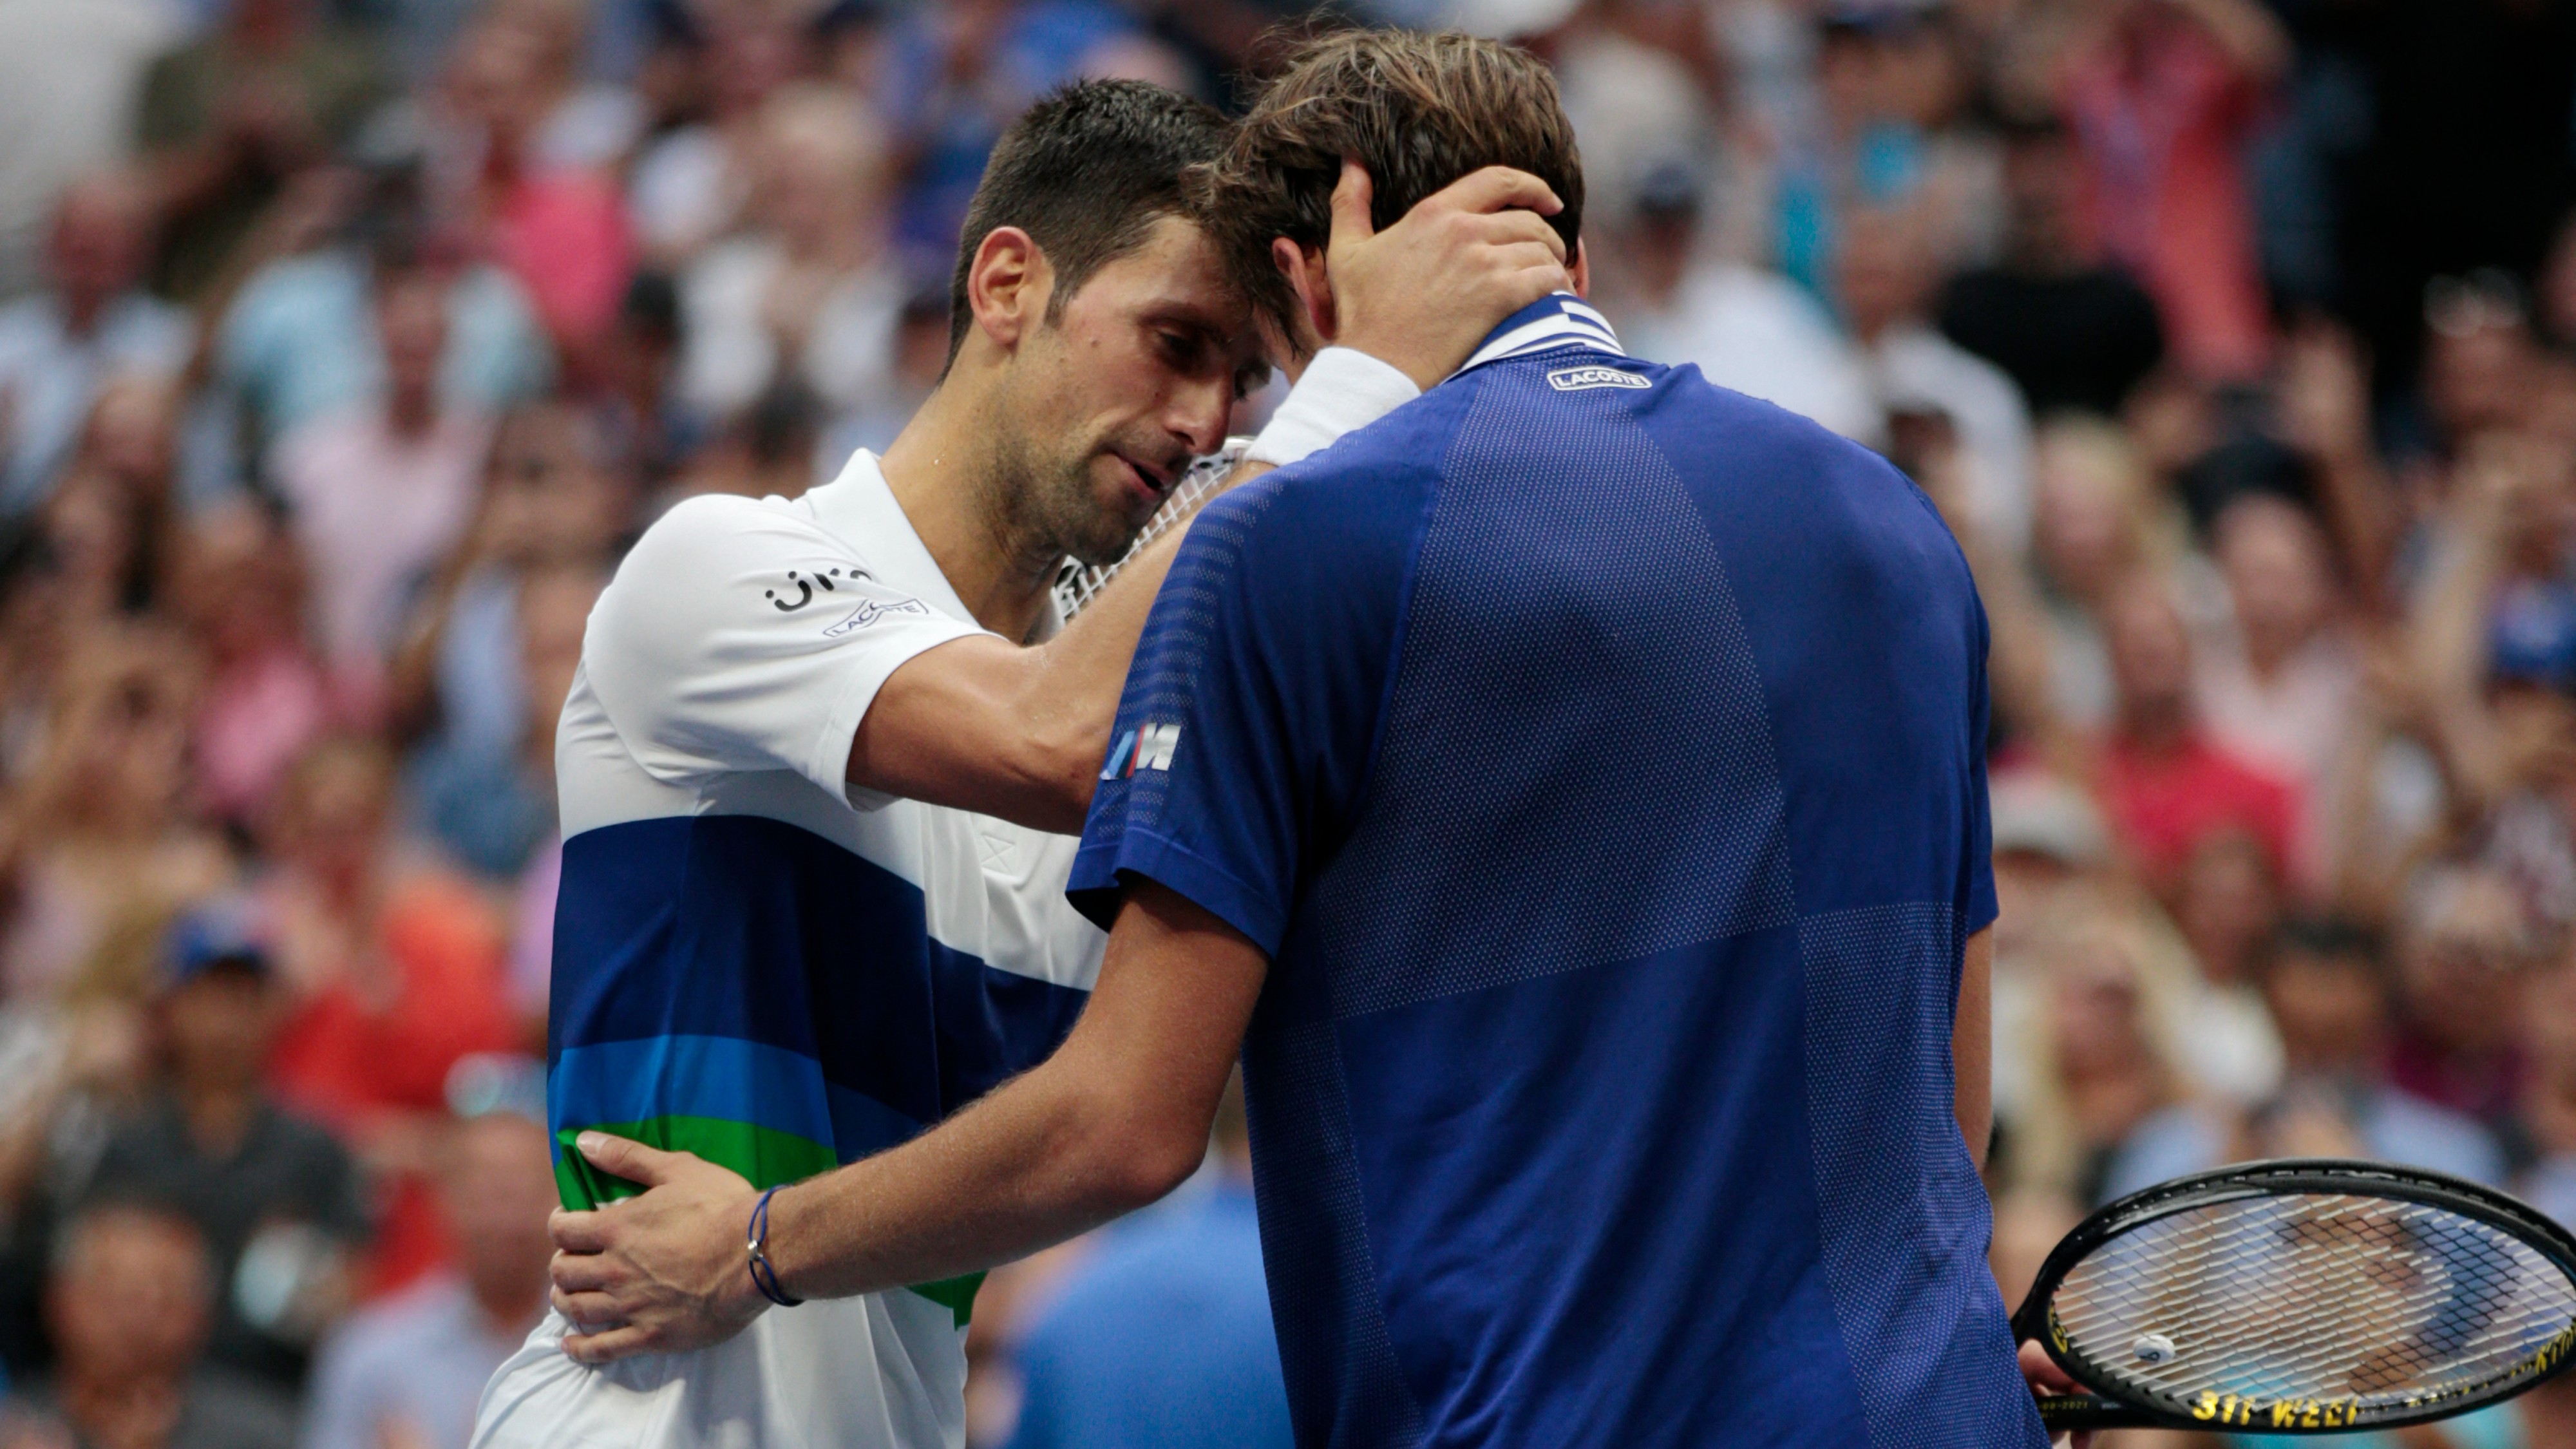 Lehet, nem is akkora baj, hogy nem Djokovic nyerte a US Opent